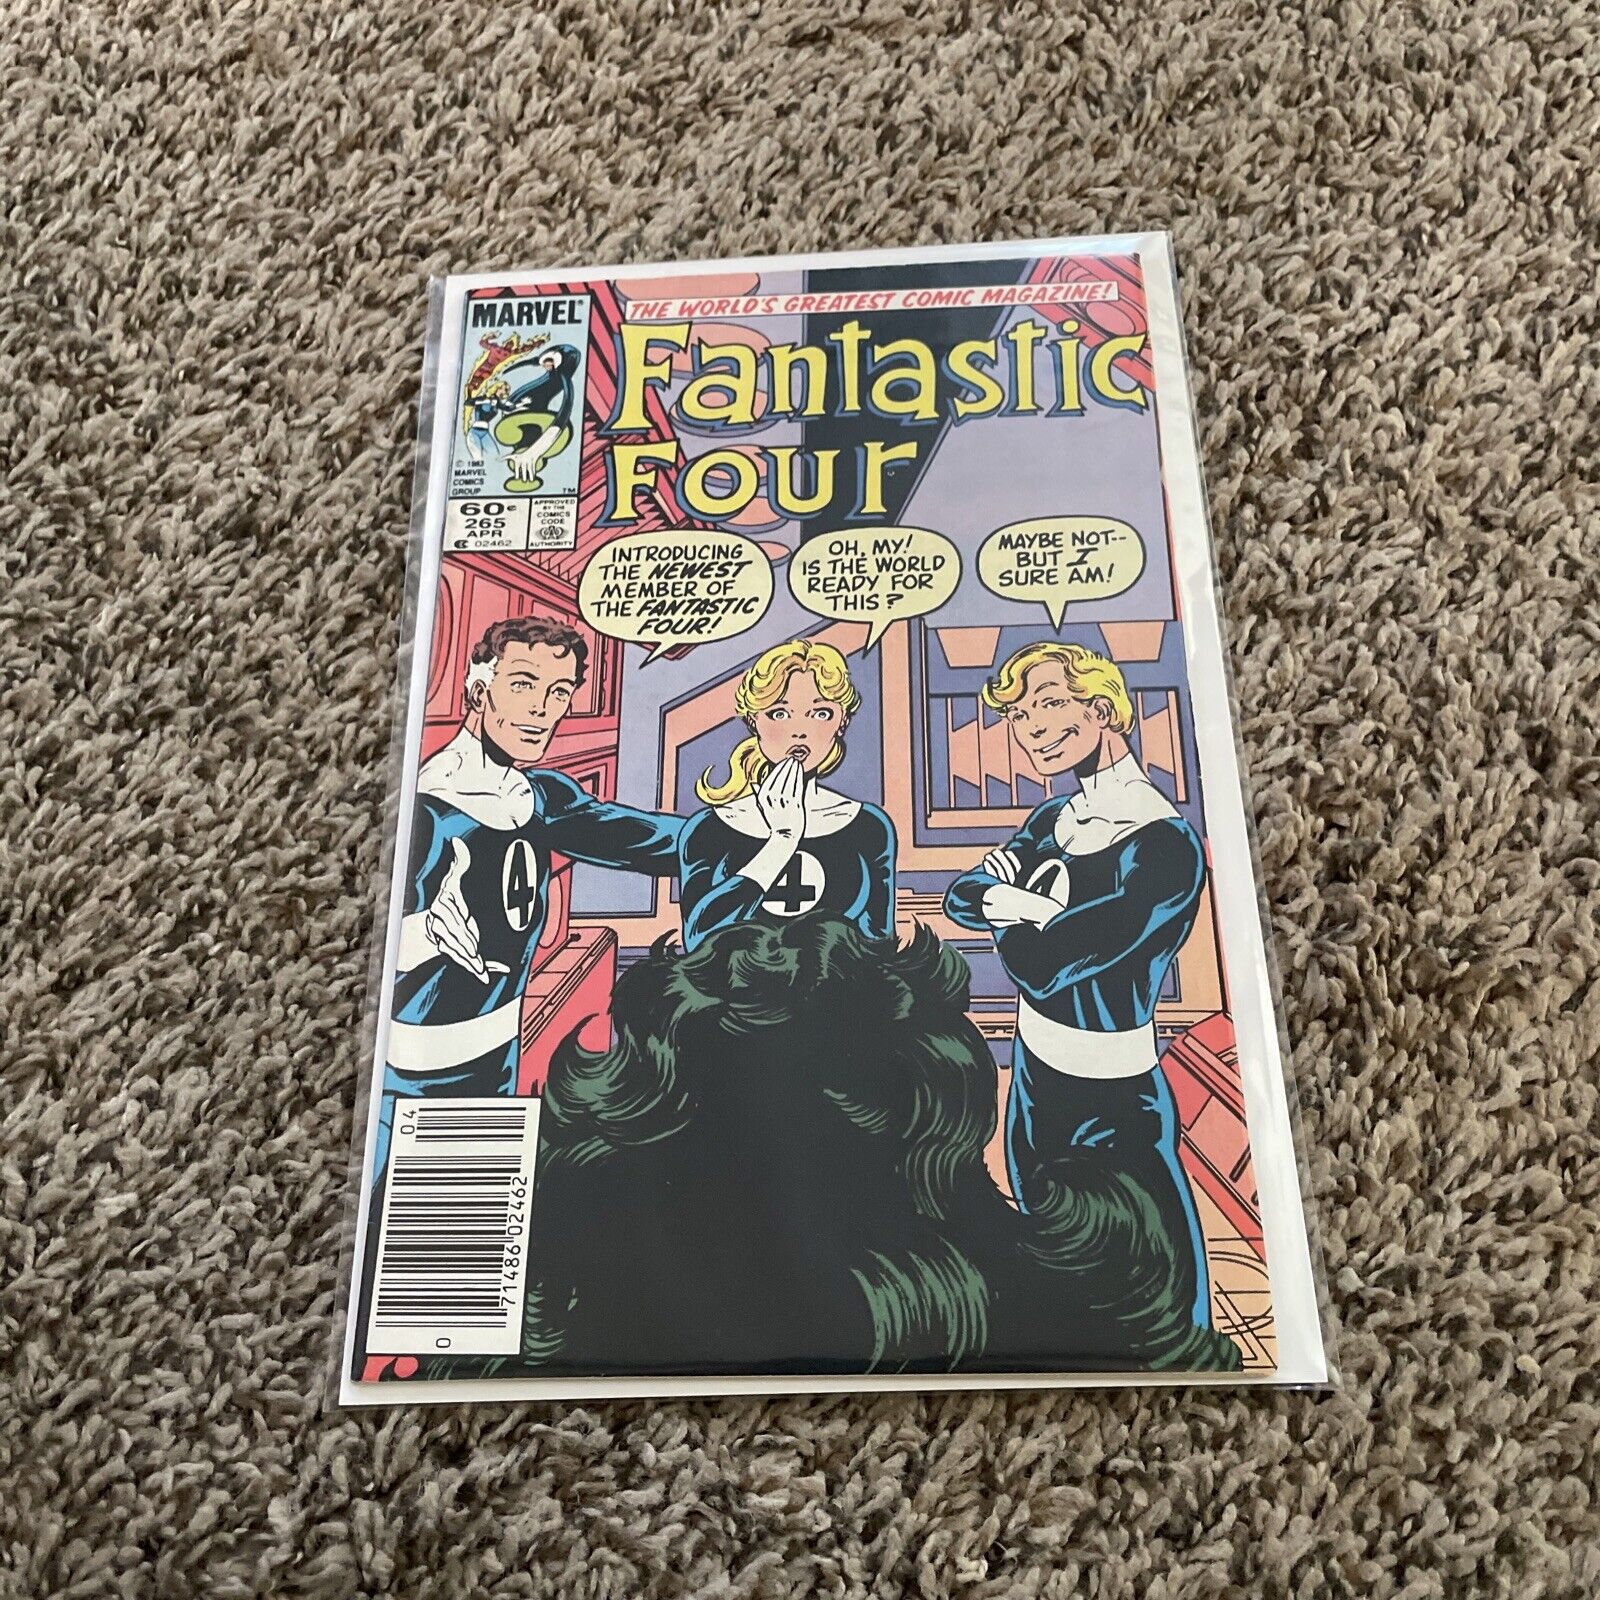 Fantastic Four #265 (Marvel Comics April 1984)